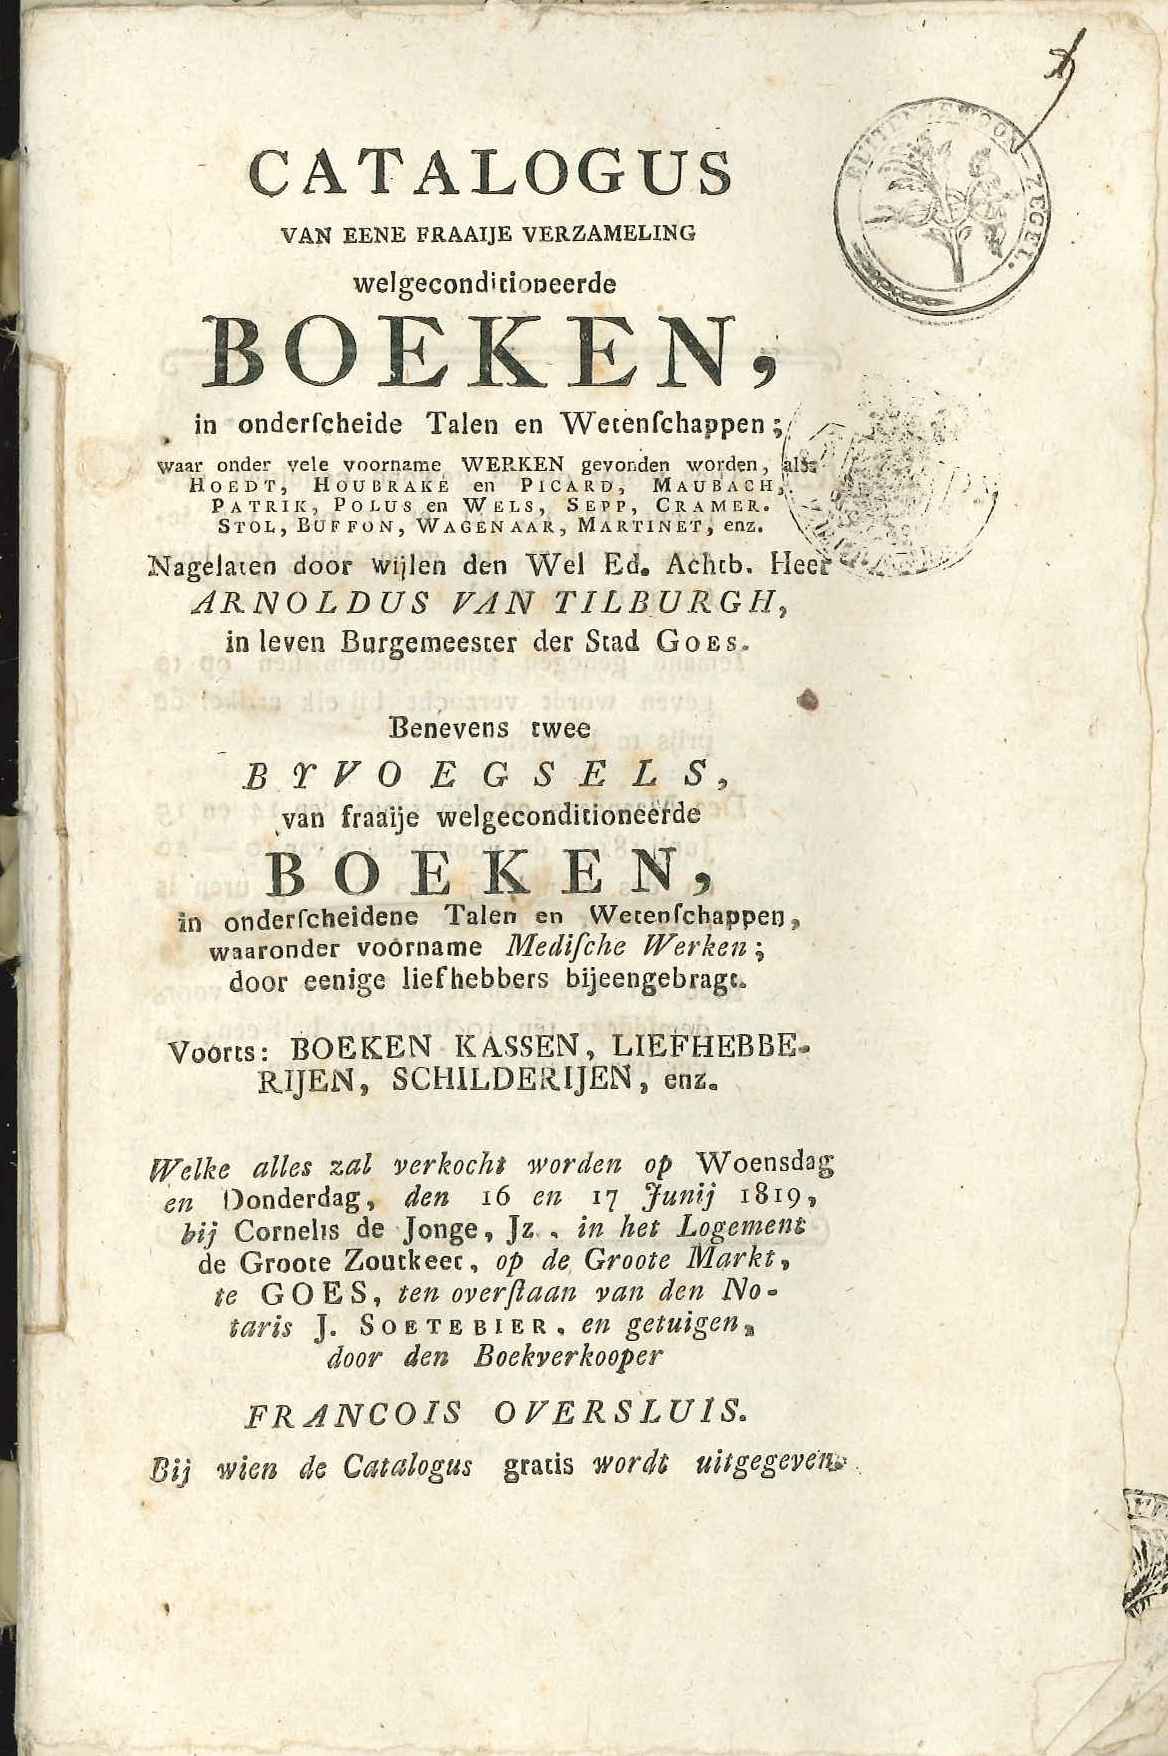 Catalogus van de veiling van boeken van A. van Tilburgh, 1819.